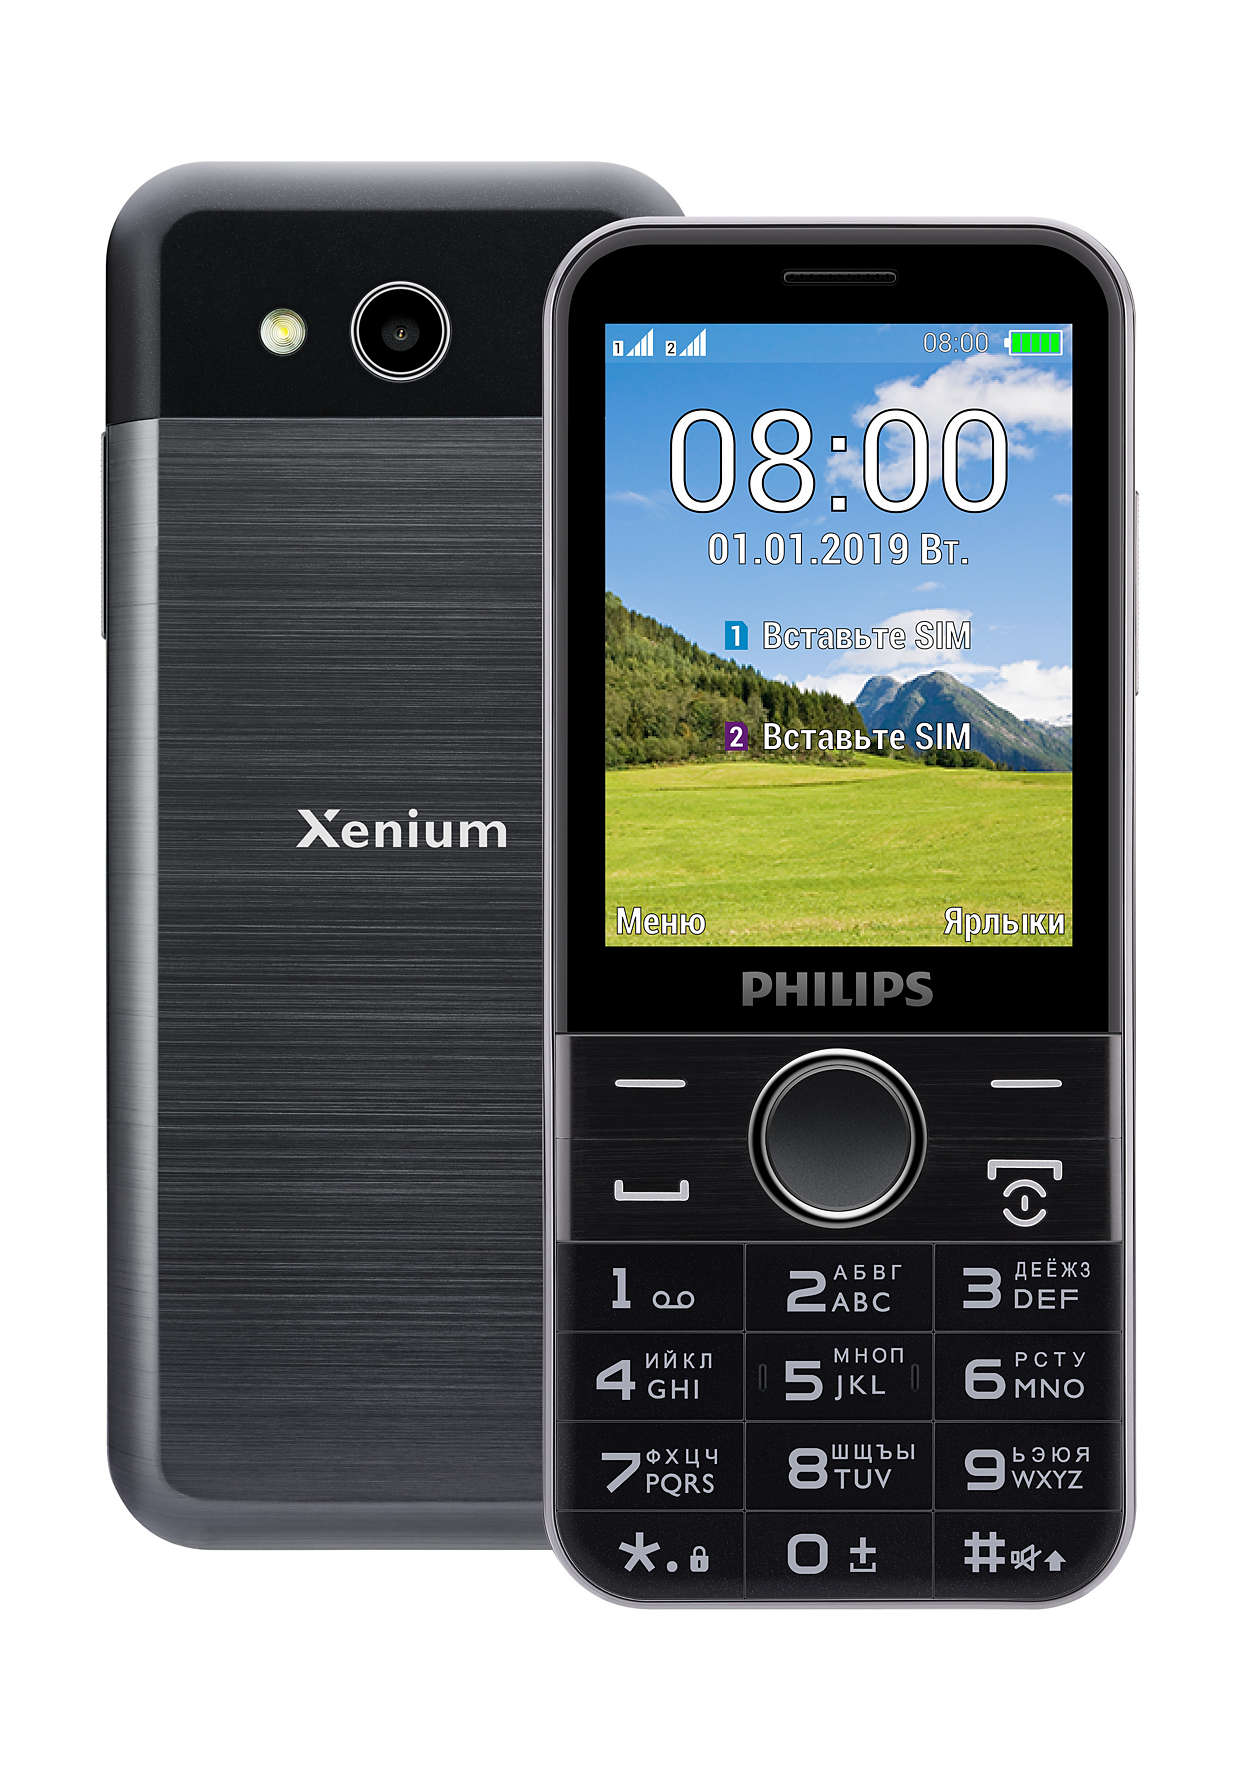 Купить мобильный телефон philips xenium. Philips Xenium e580. Philips Xenium e590. Philips Xenium e580 Black. Телефон Philips Xenium e580.